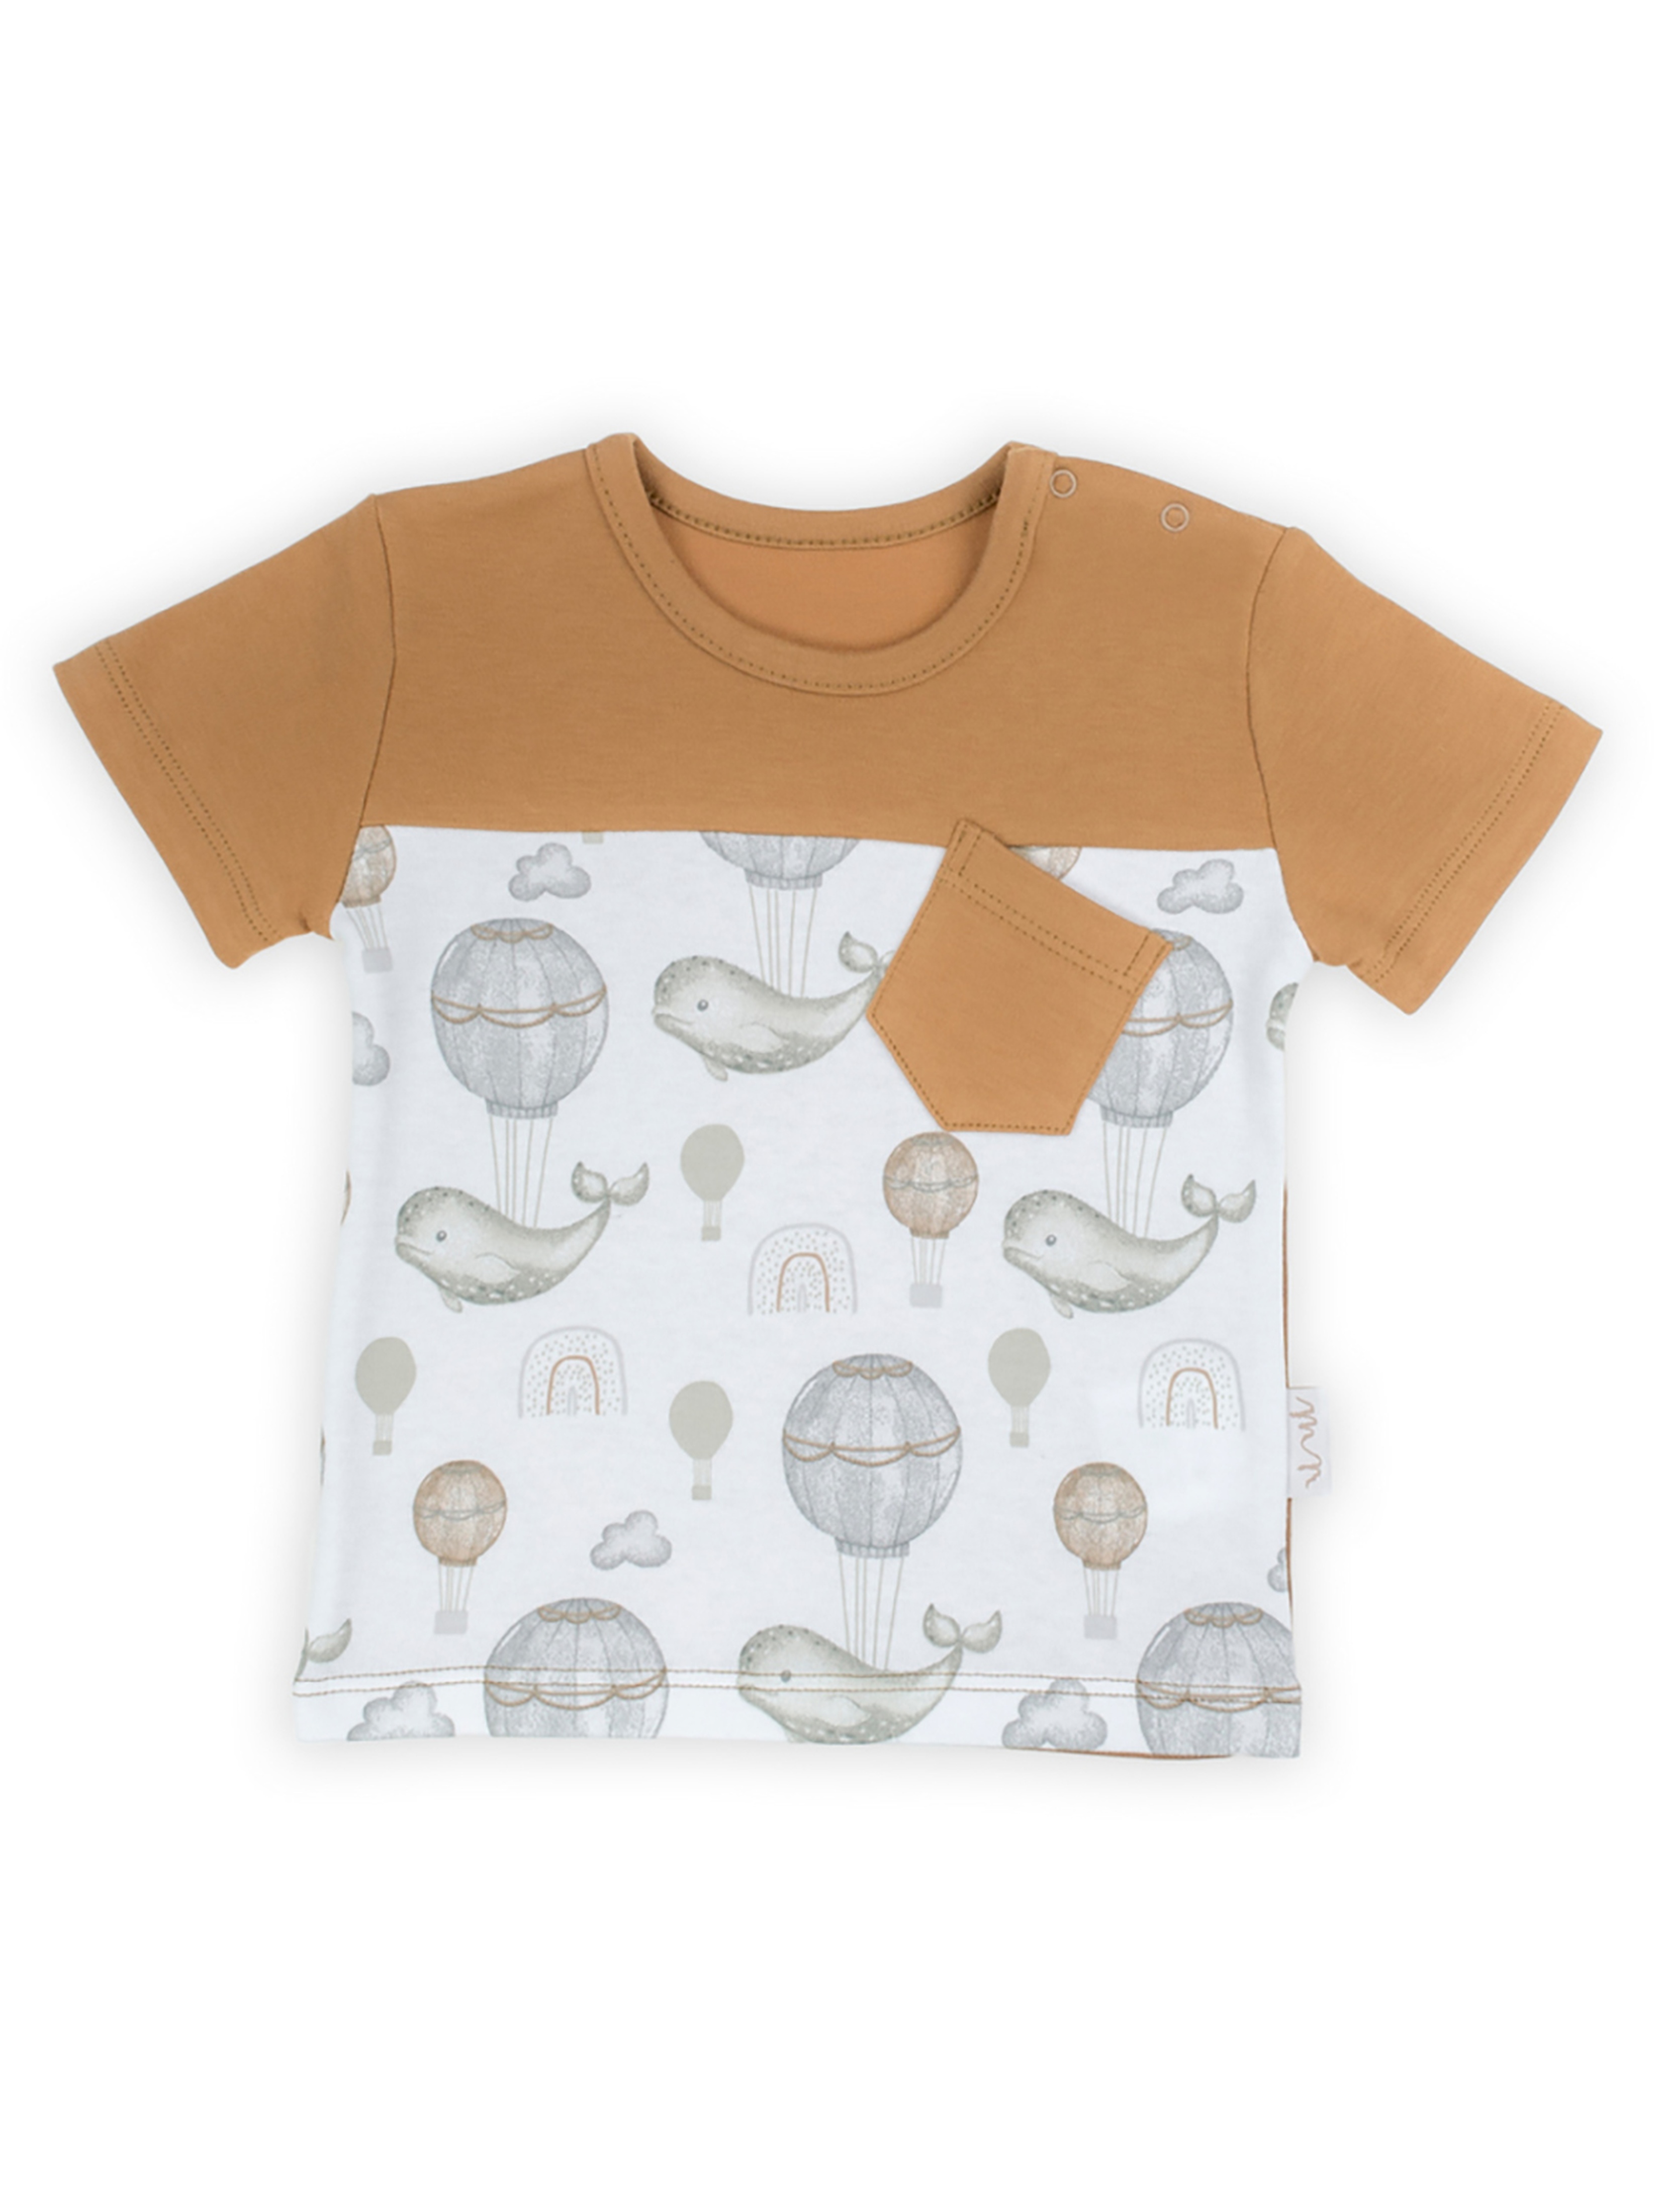 Bawełniany t-shirt dla chłopca z kieszonką- wieloryby i balony